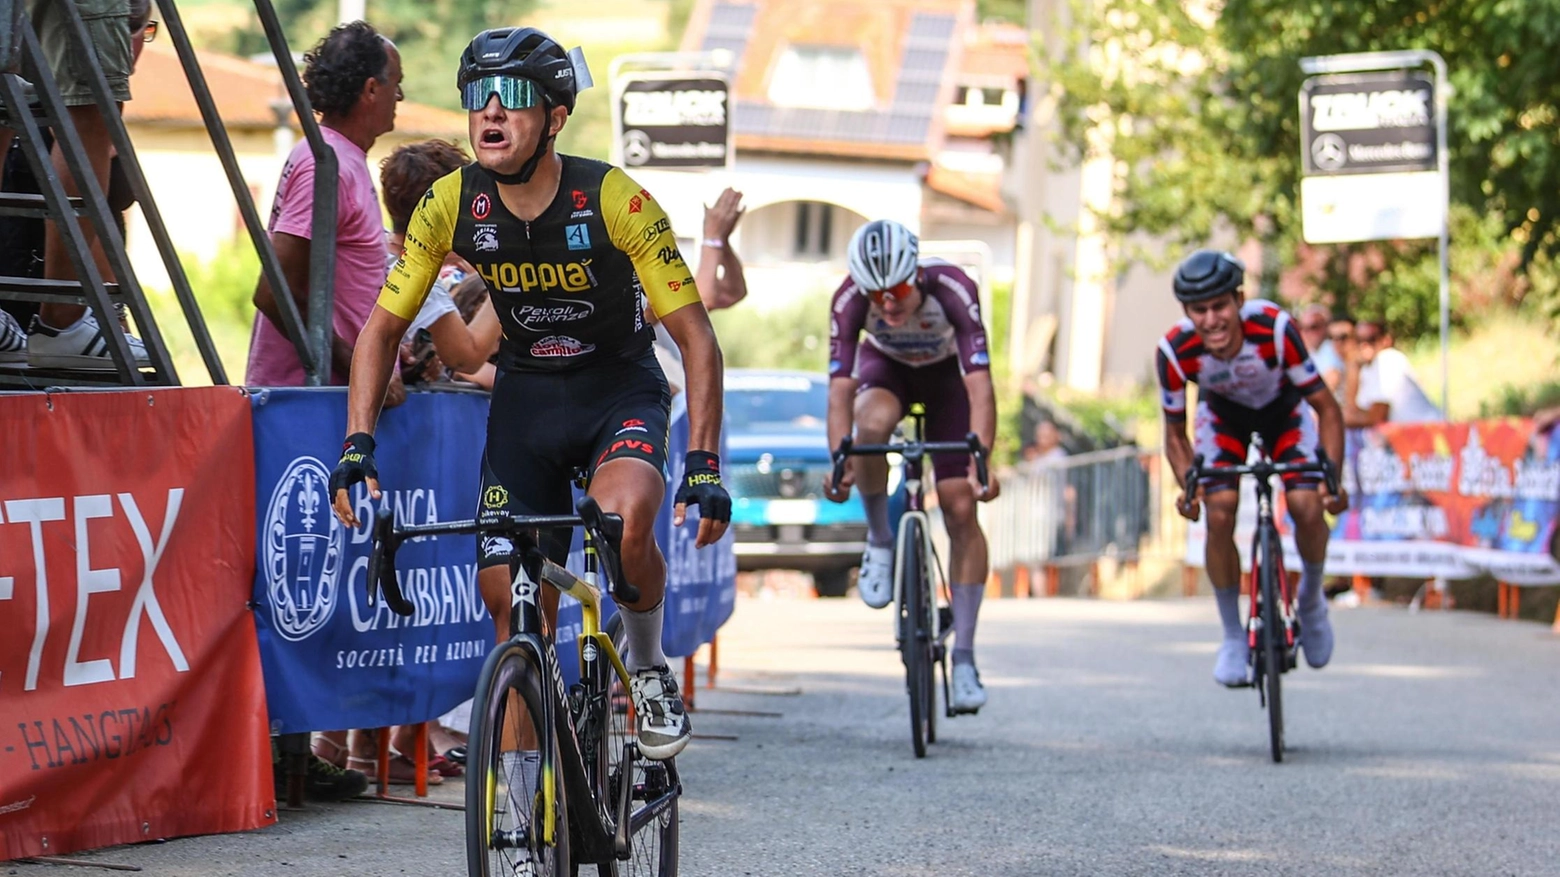 Il ciclista valdarnese Matteo Regnanti vince il Gran Premio Emmetex a Corniola dopo una gara selettiva con soli 23 arrivati su 94 partenti.